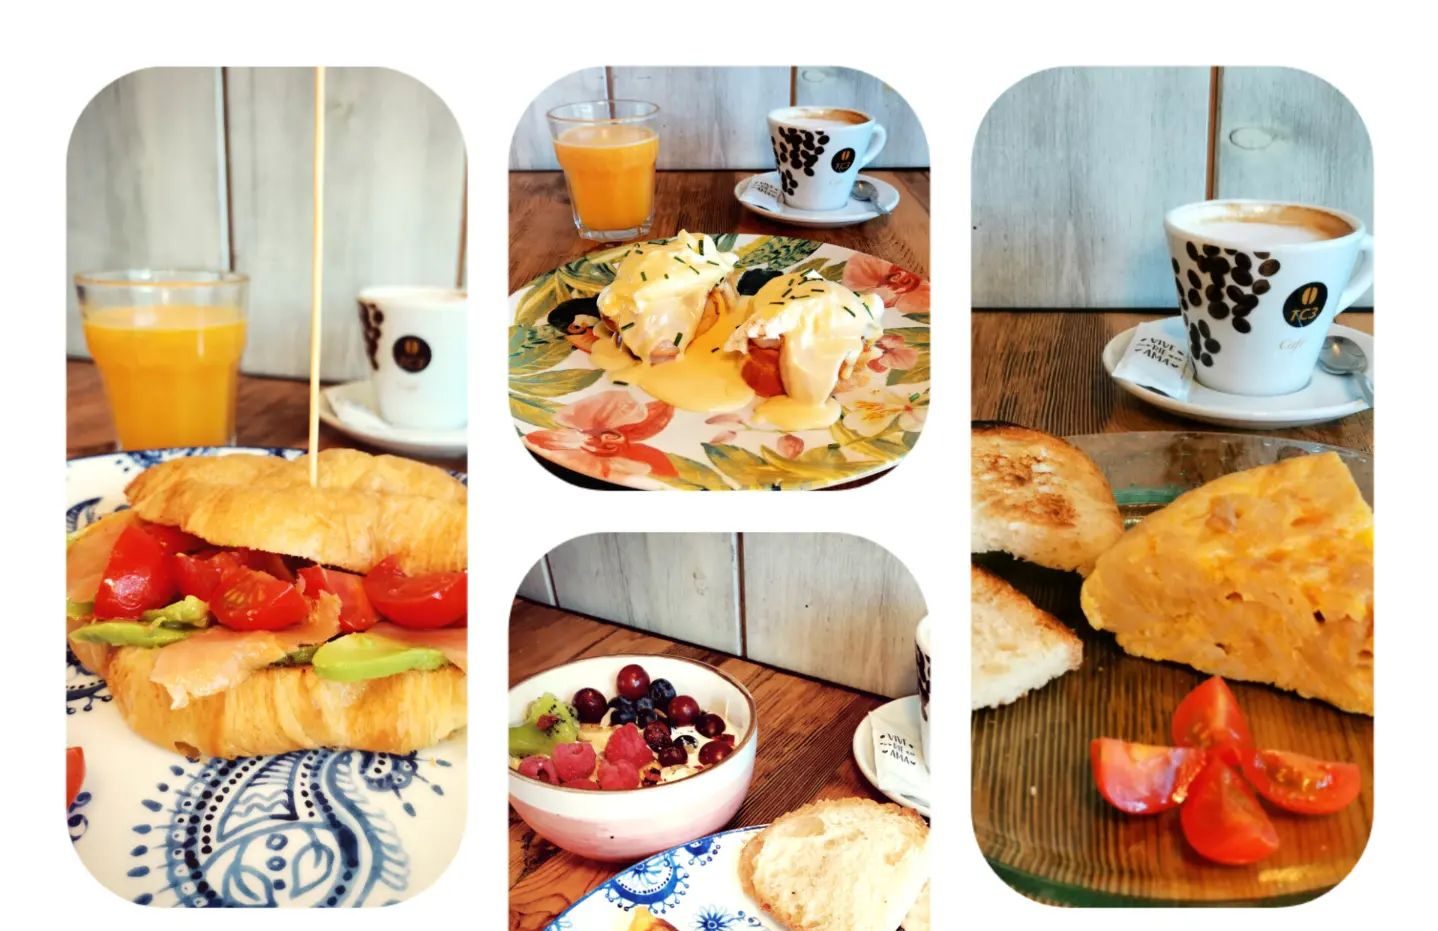 Rosita Milagros anima los fines de semana con sus mañanas de Brunch y desayunos divertidos 1